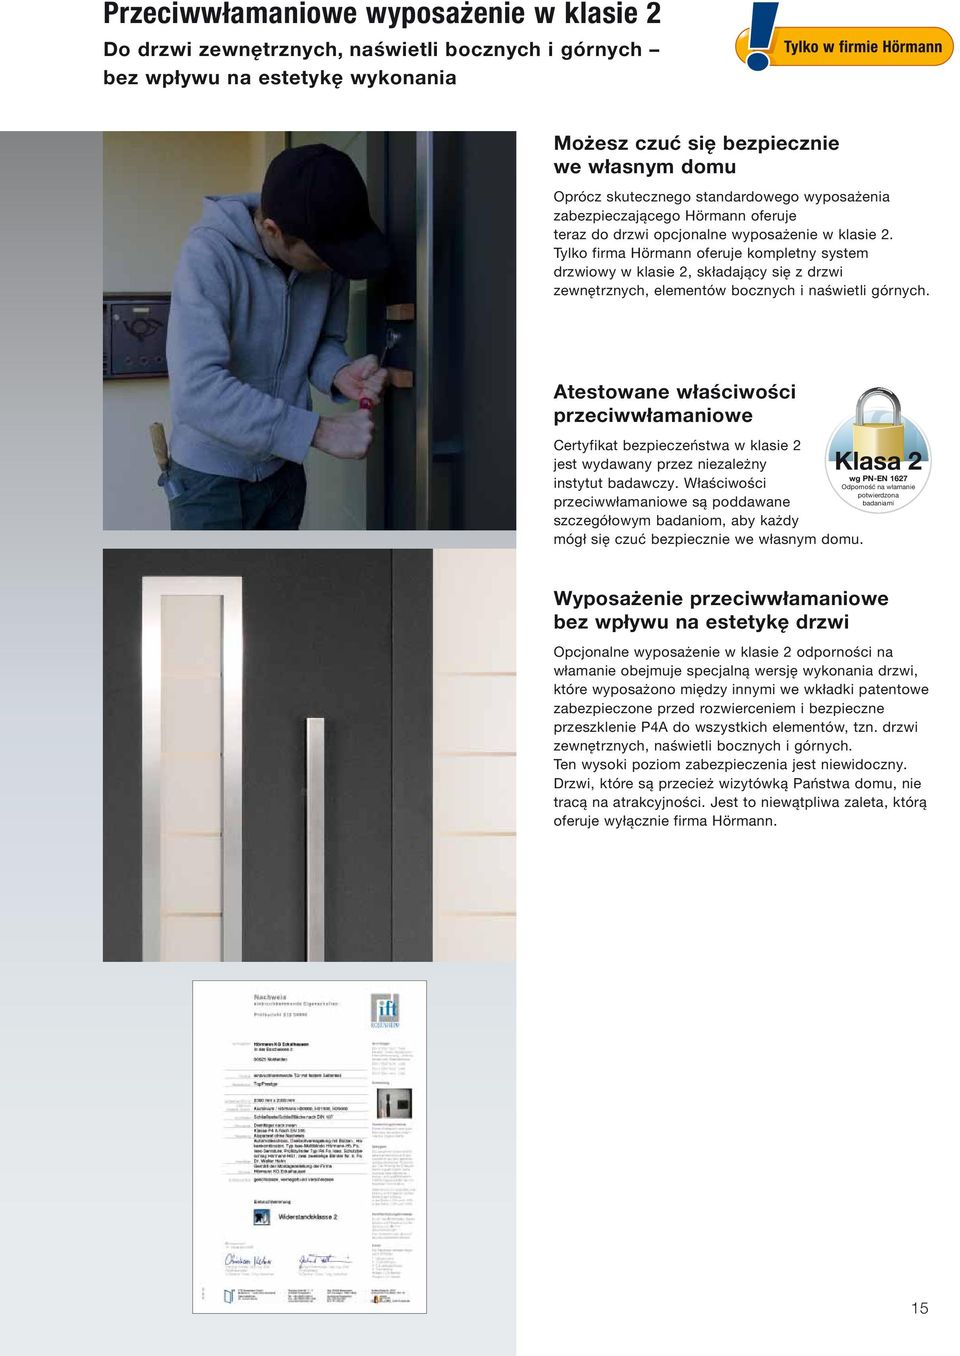 Tylko firma Hörmann oferuje kompletny system drzwiowy w klasie 2, składający się z drzwi zewnętrznych, elementów bocznych i naświetli górnych.